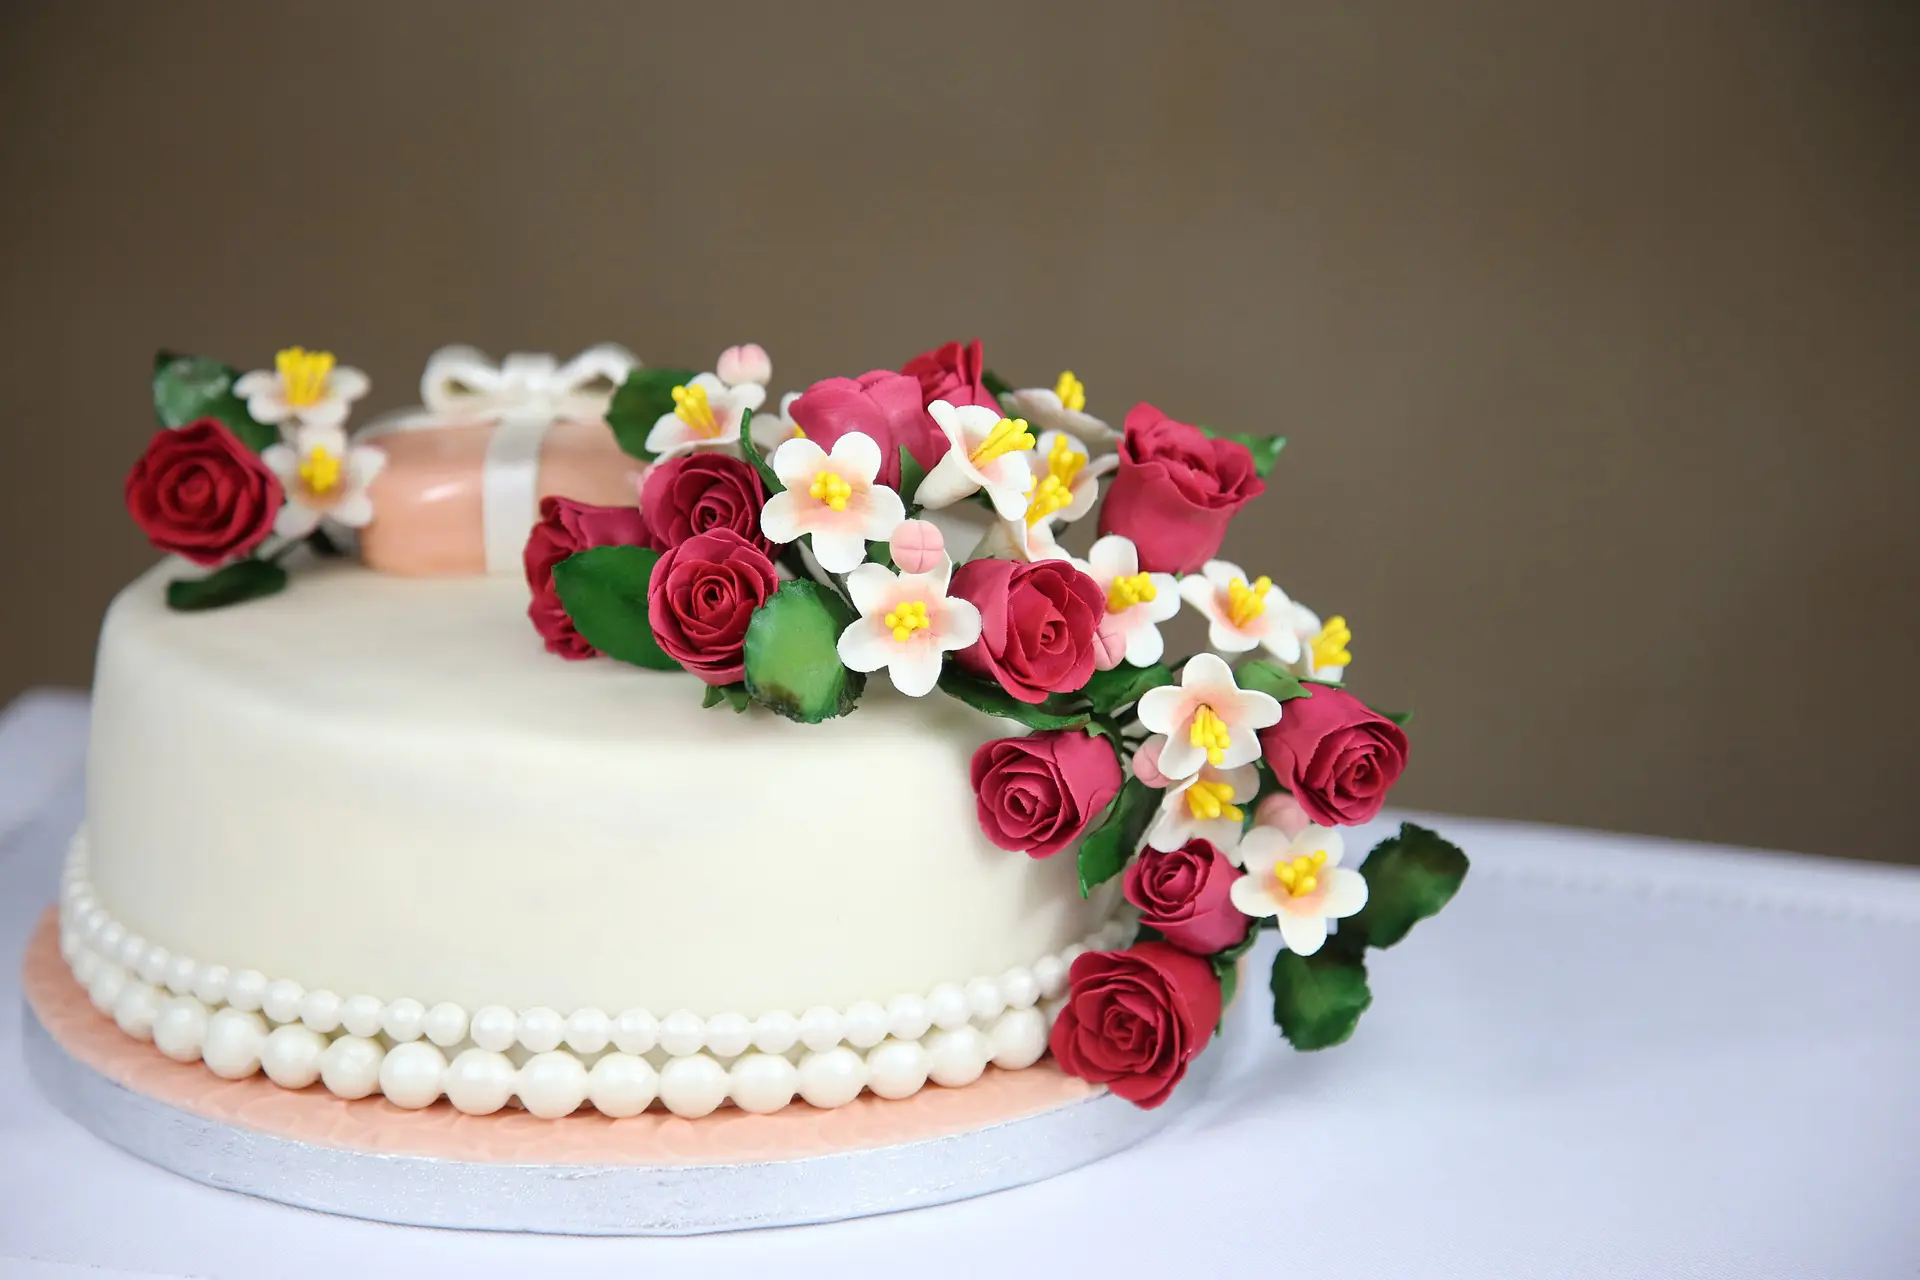 Cutie pie Cakes | Polayathode | Kollam | Premium pastry | Birthday cakes -  YouTube